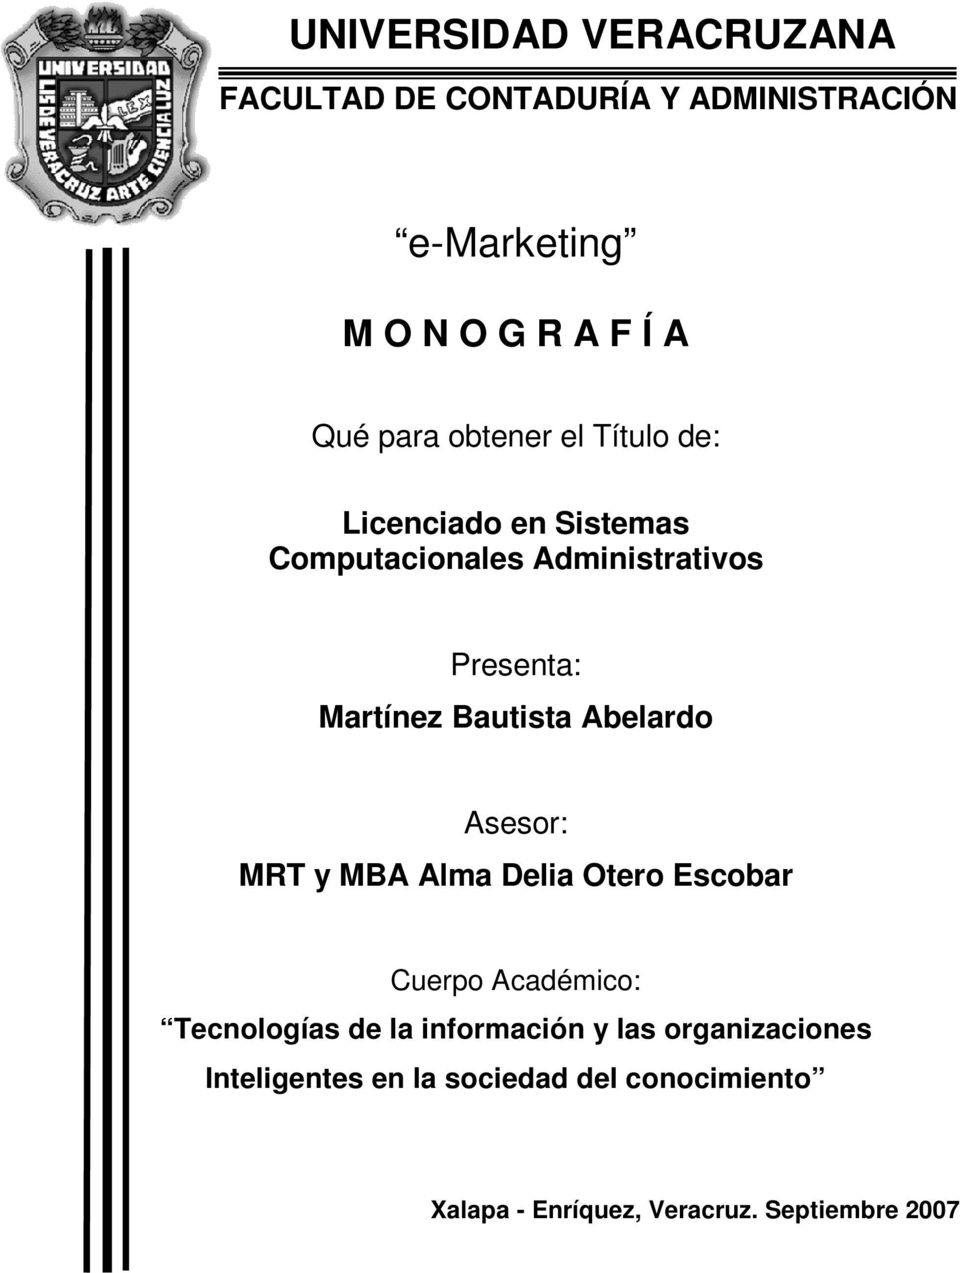 Abelardo Asesor: MRT y MBA Alma Delia Otero Escobar Cuerpo Académico: Tecnologías de la información y las